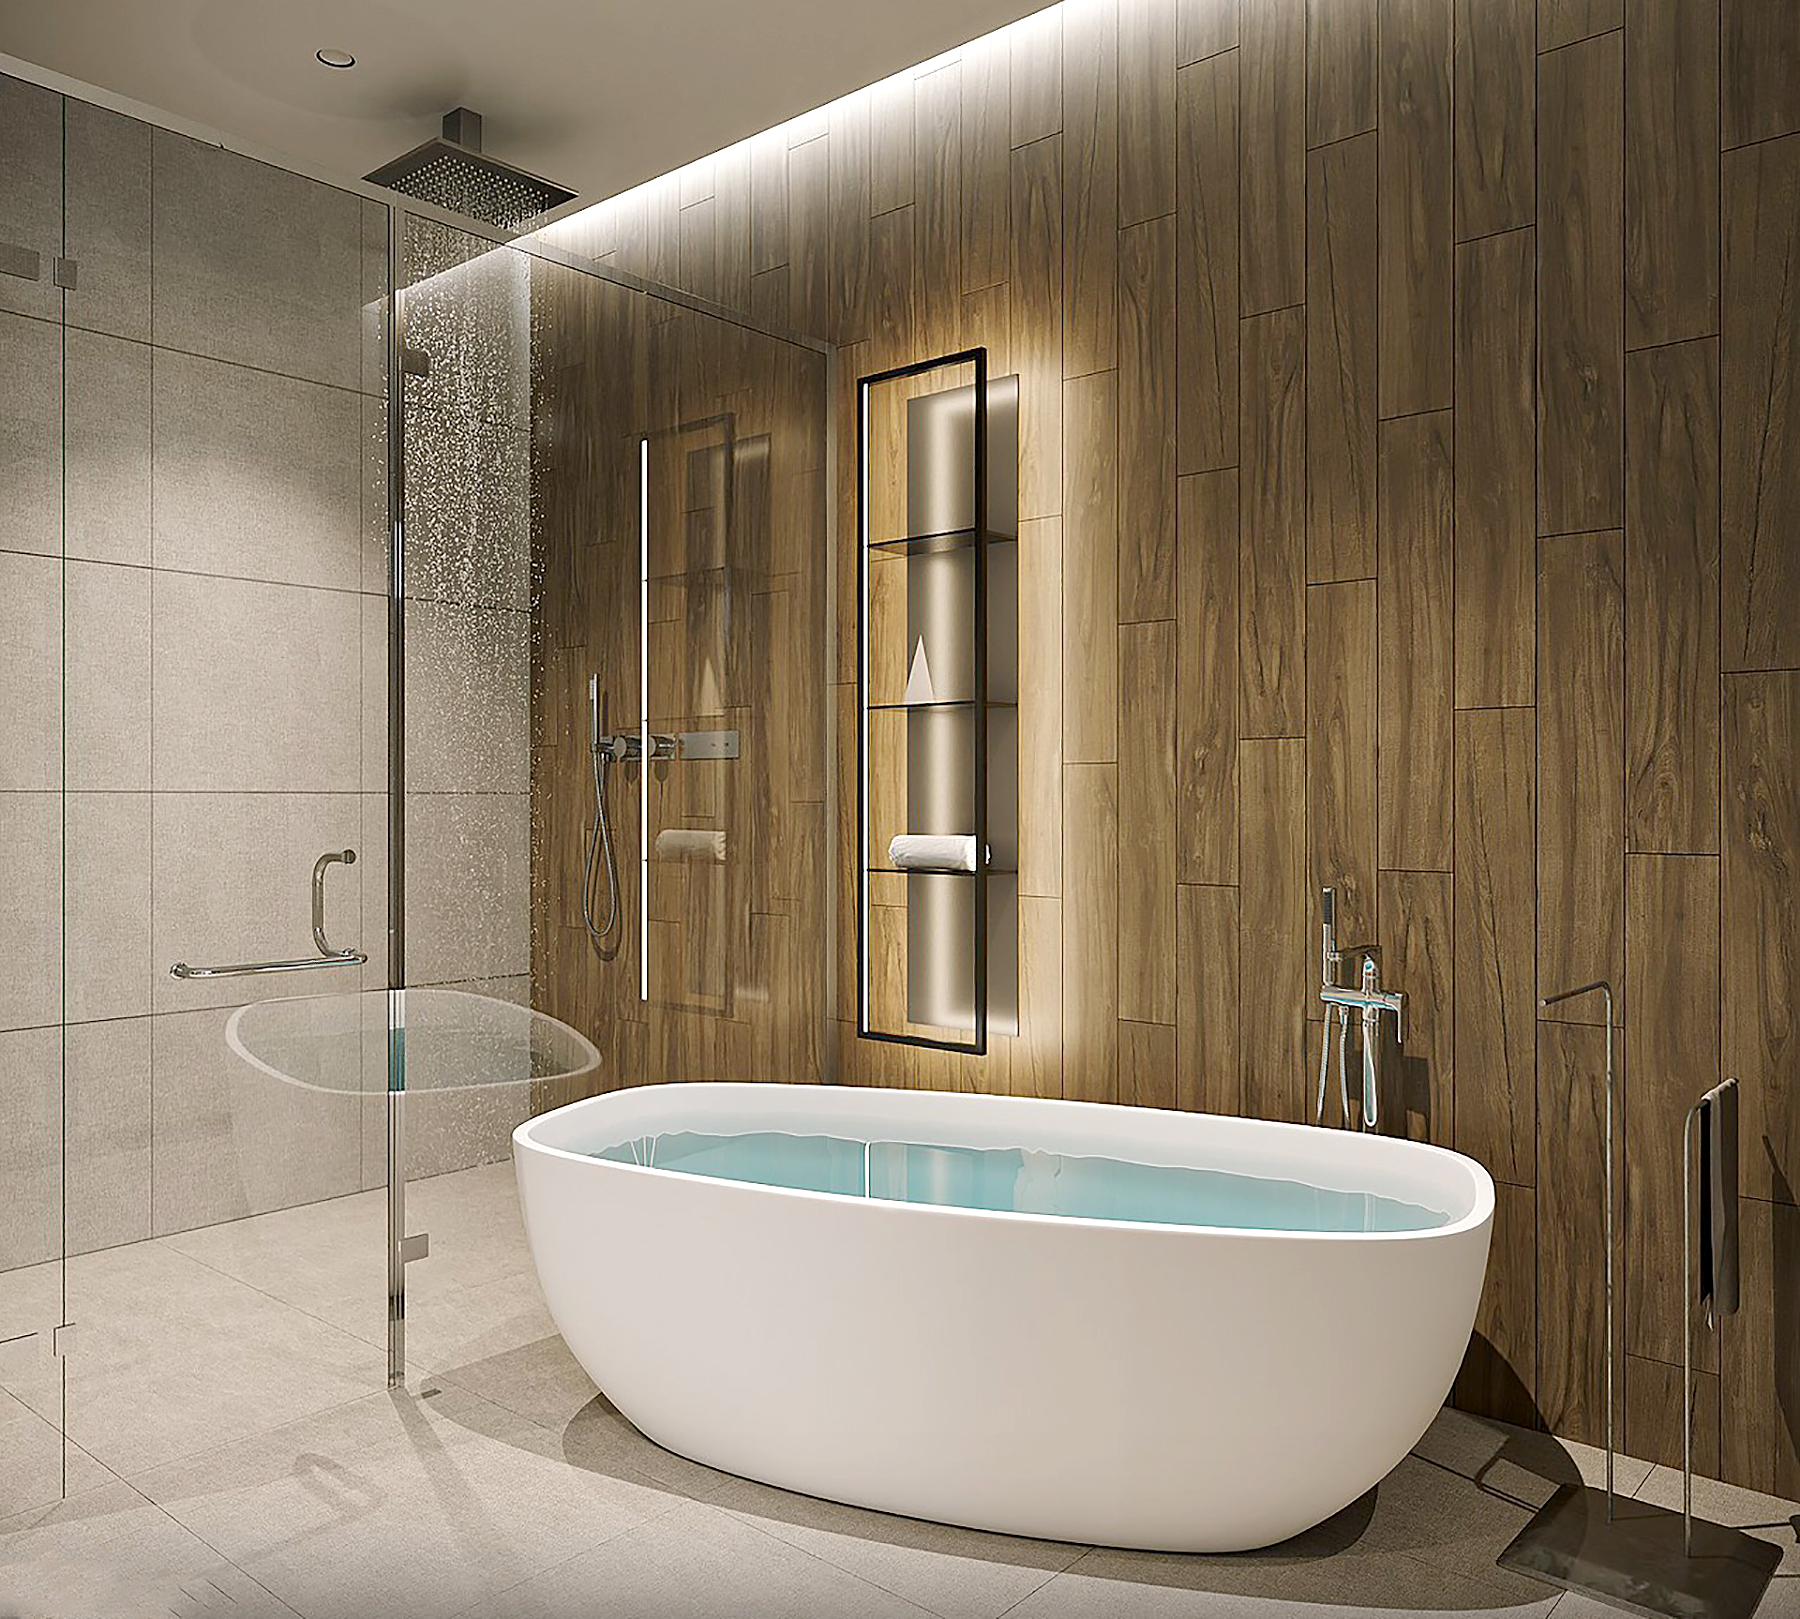 Phòng tắm, phong cách Hiện đại Modern, thiết kế concept nội thất, khách sạn Ngã ba Liên Khương